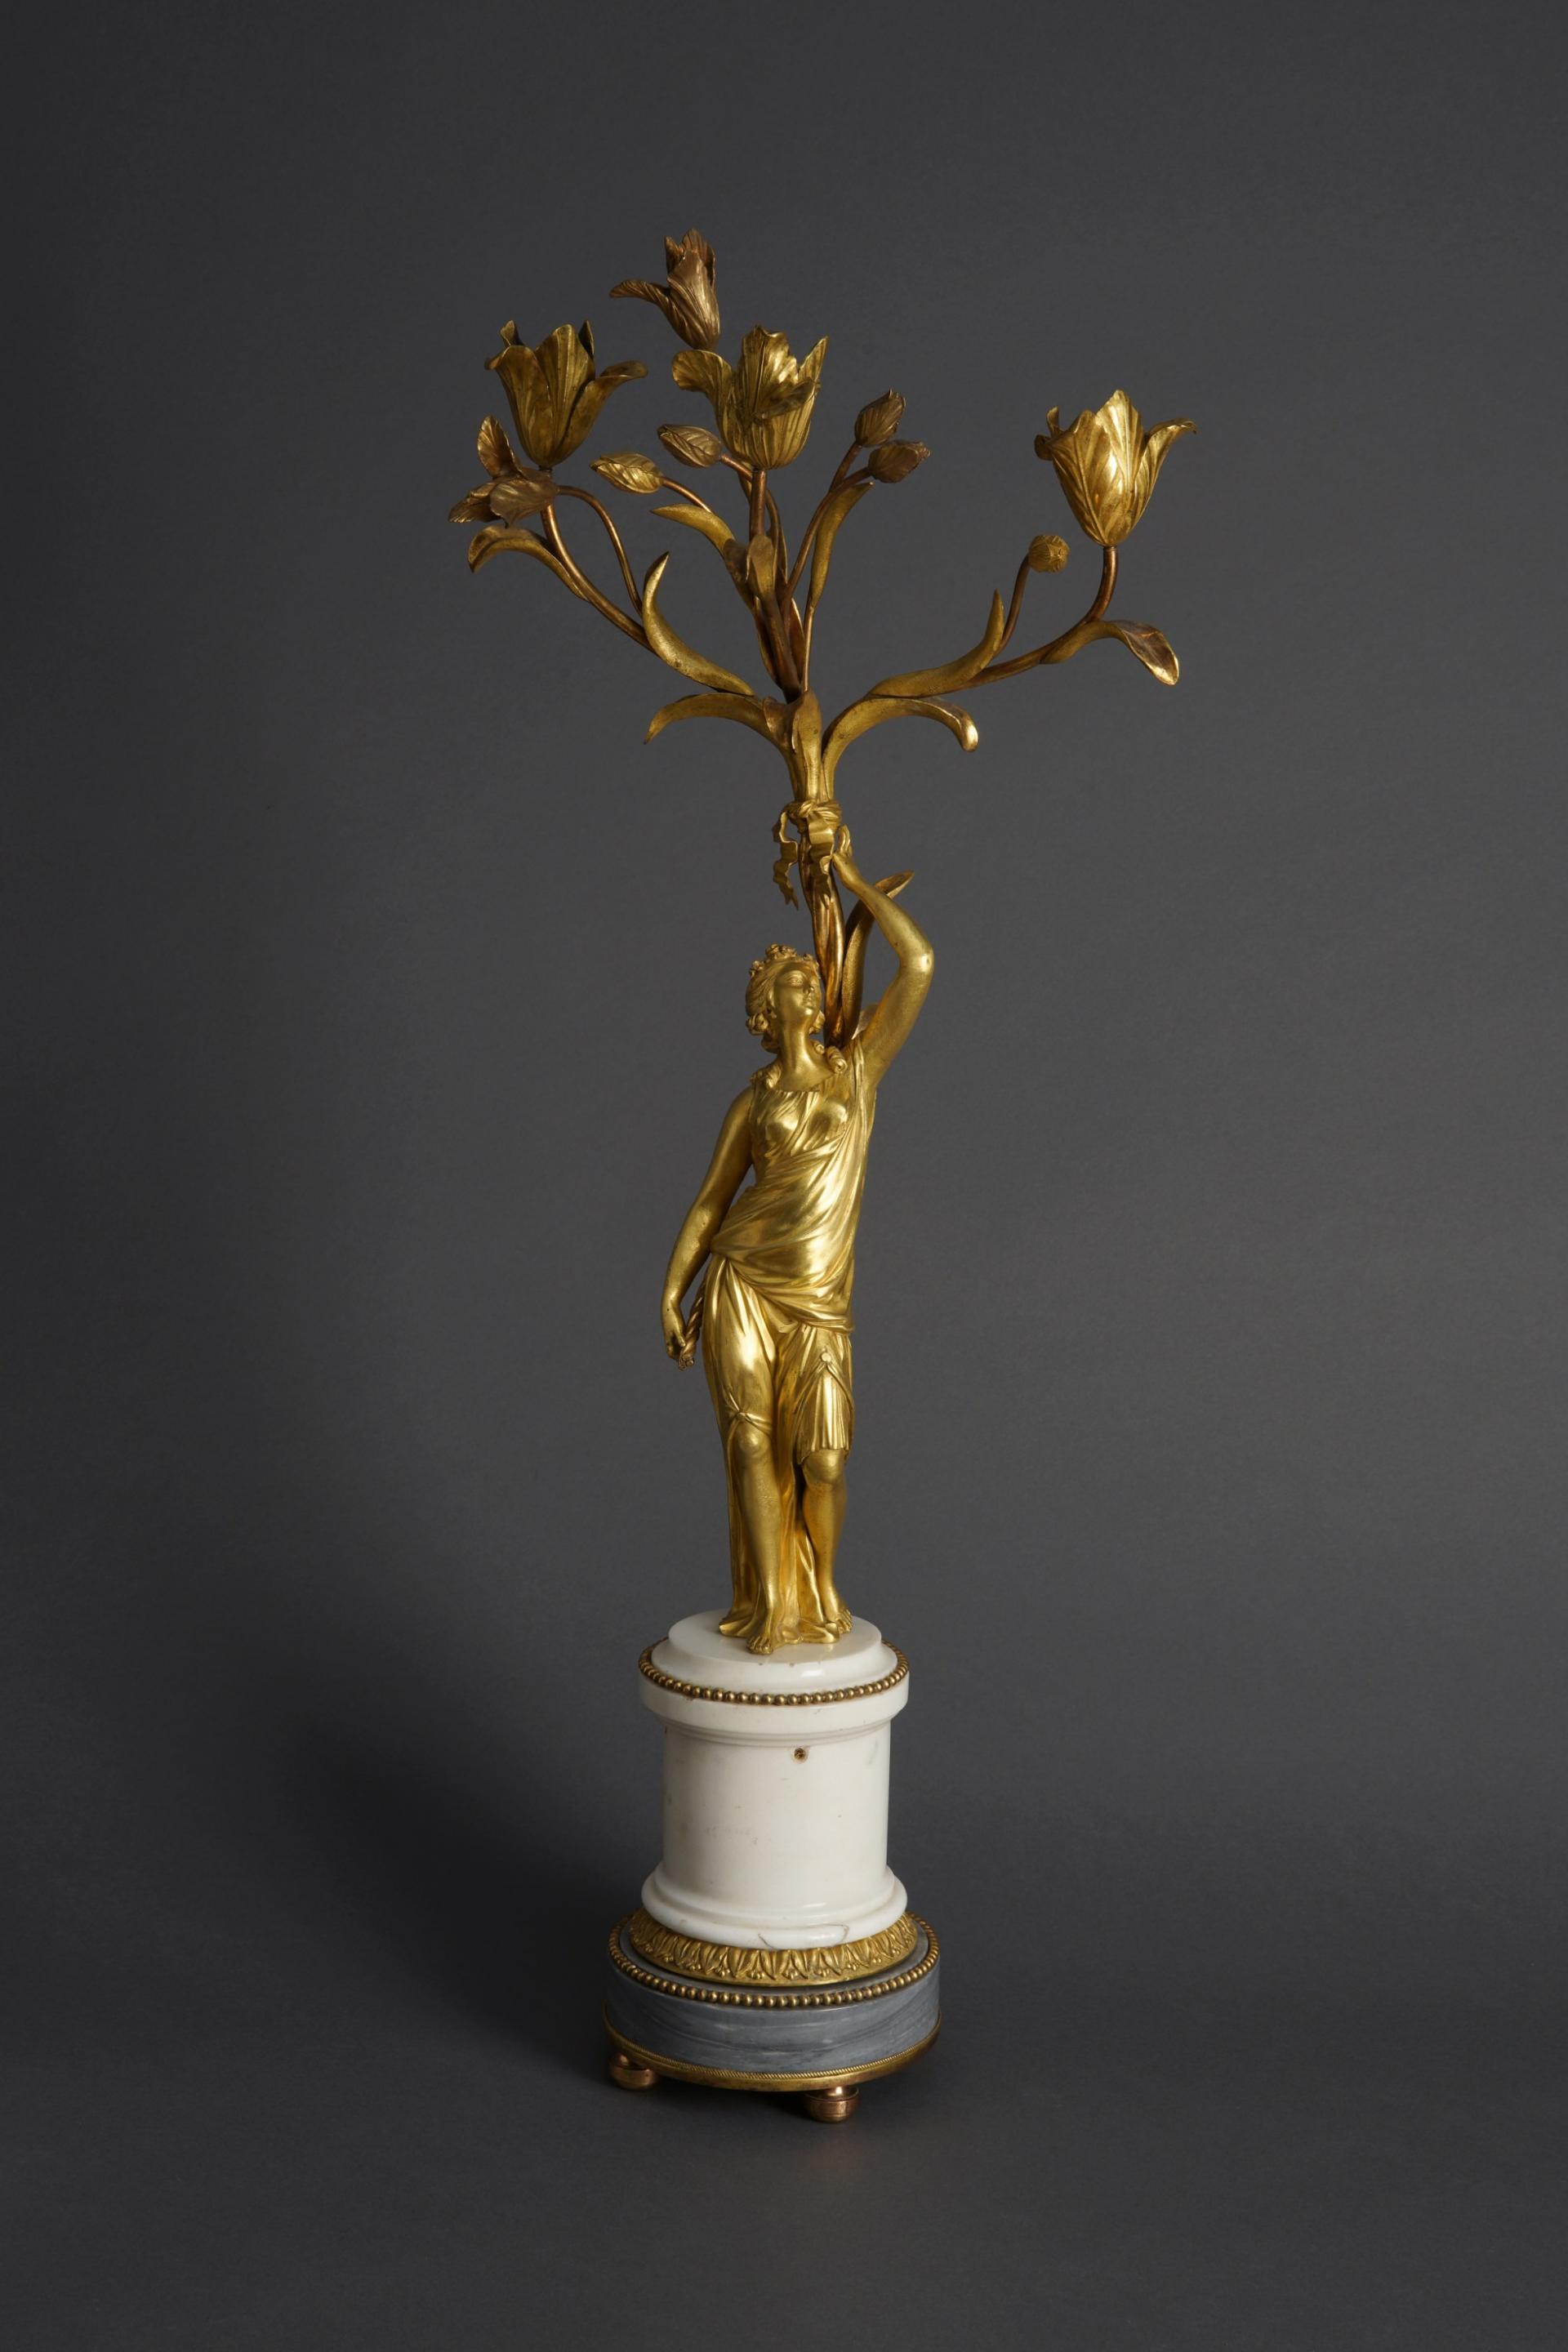 Канделябр.  Фигура нимфы выполнена по модели Этьена Мориса Фальконе (1716–1791)  Франция, Париж  1780-е  Бронза, белый мрамор, серый мрамор, литьё, чеканка, матовое и глянцевое огневое золочение.